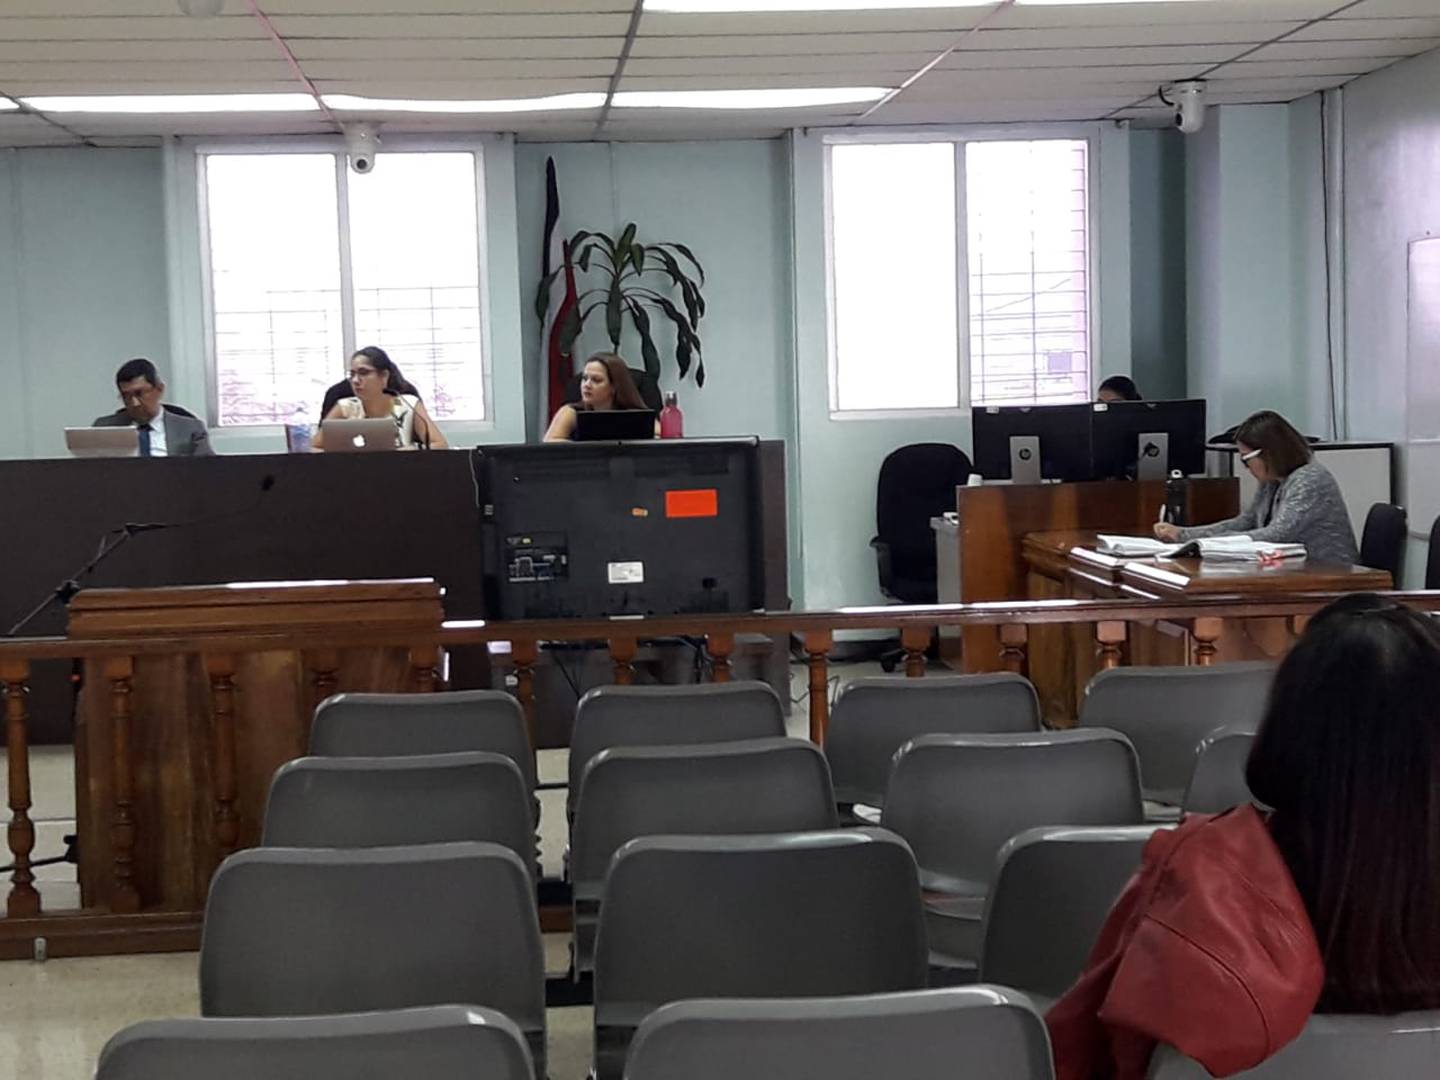 Los jueces Rolando Morales Valladares, Angie Padilla Quesada y Sailyn Ballestero Mora dieron inicio hoy al juicio por homicidio calificado. Foto: Keyna Calderón